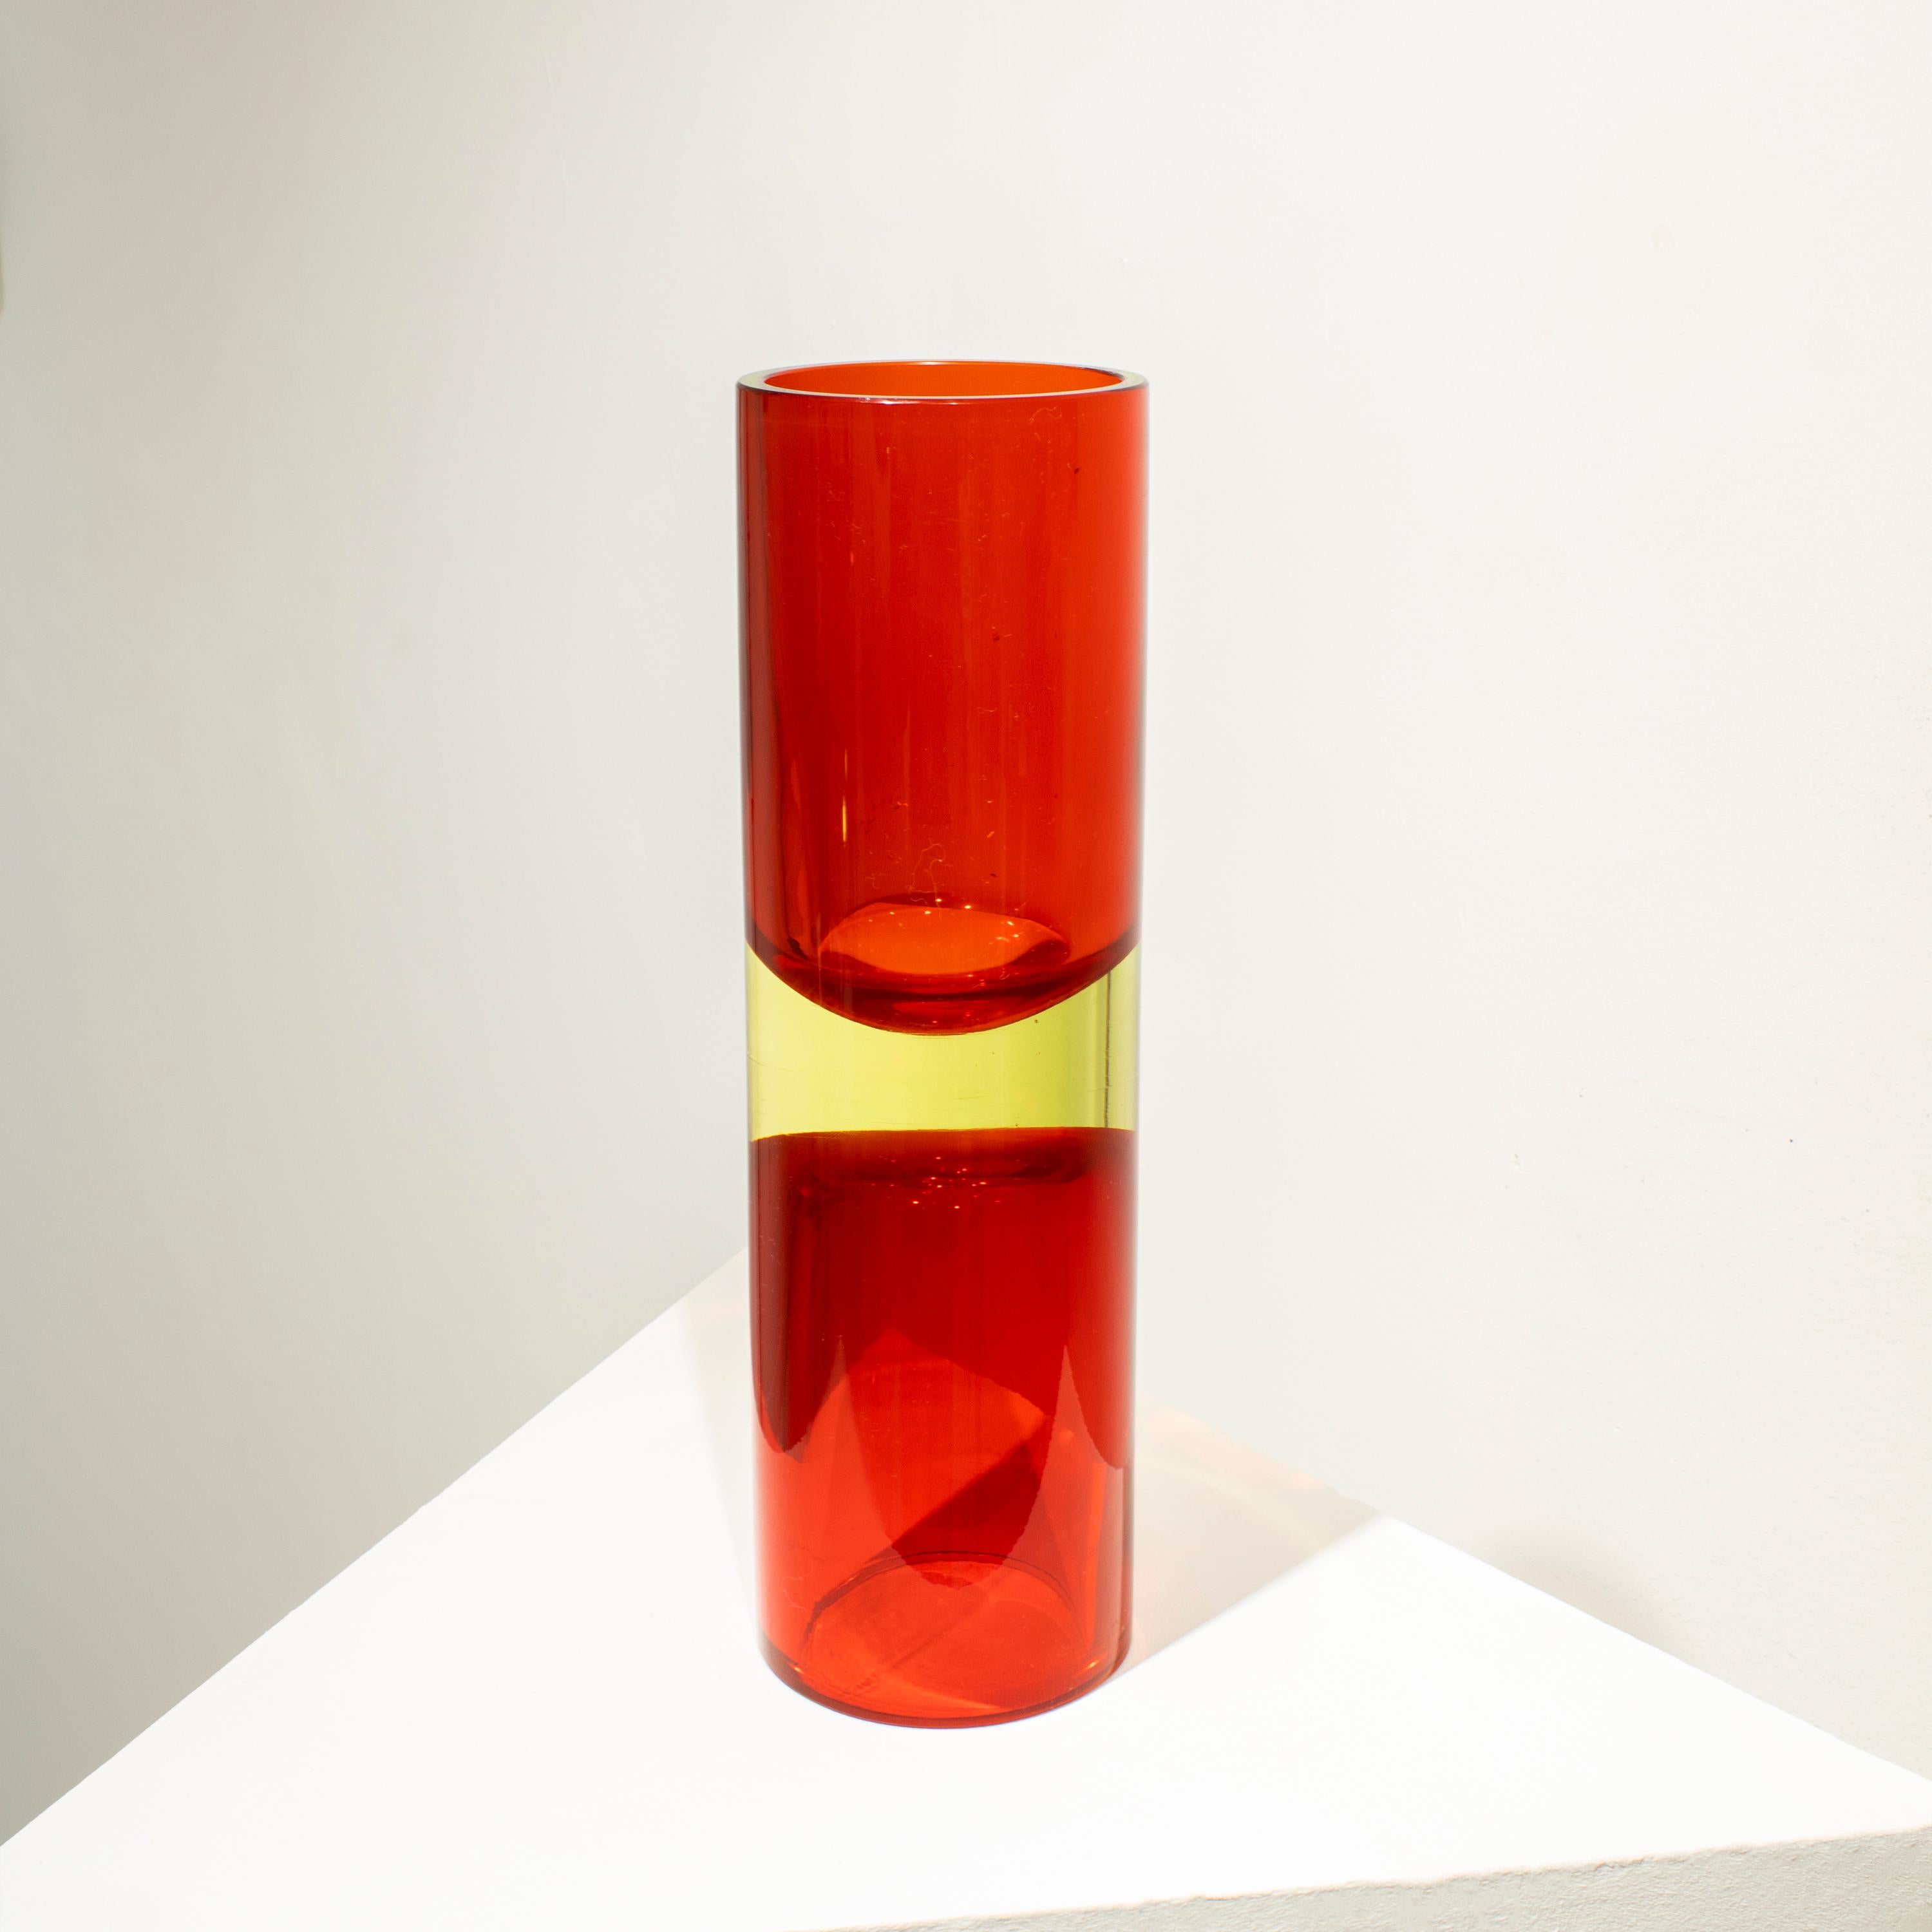 Italienische Vase, entworfen in den 1970er Jahren. Die Vase ist aus Murano-Glas handgefertigt und hat eine zylindrische Form in den Farben Rot und Gelb. 